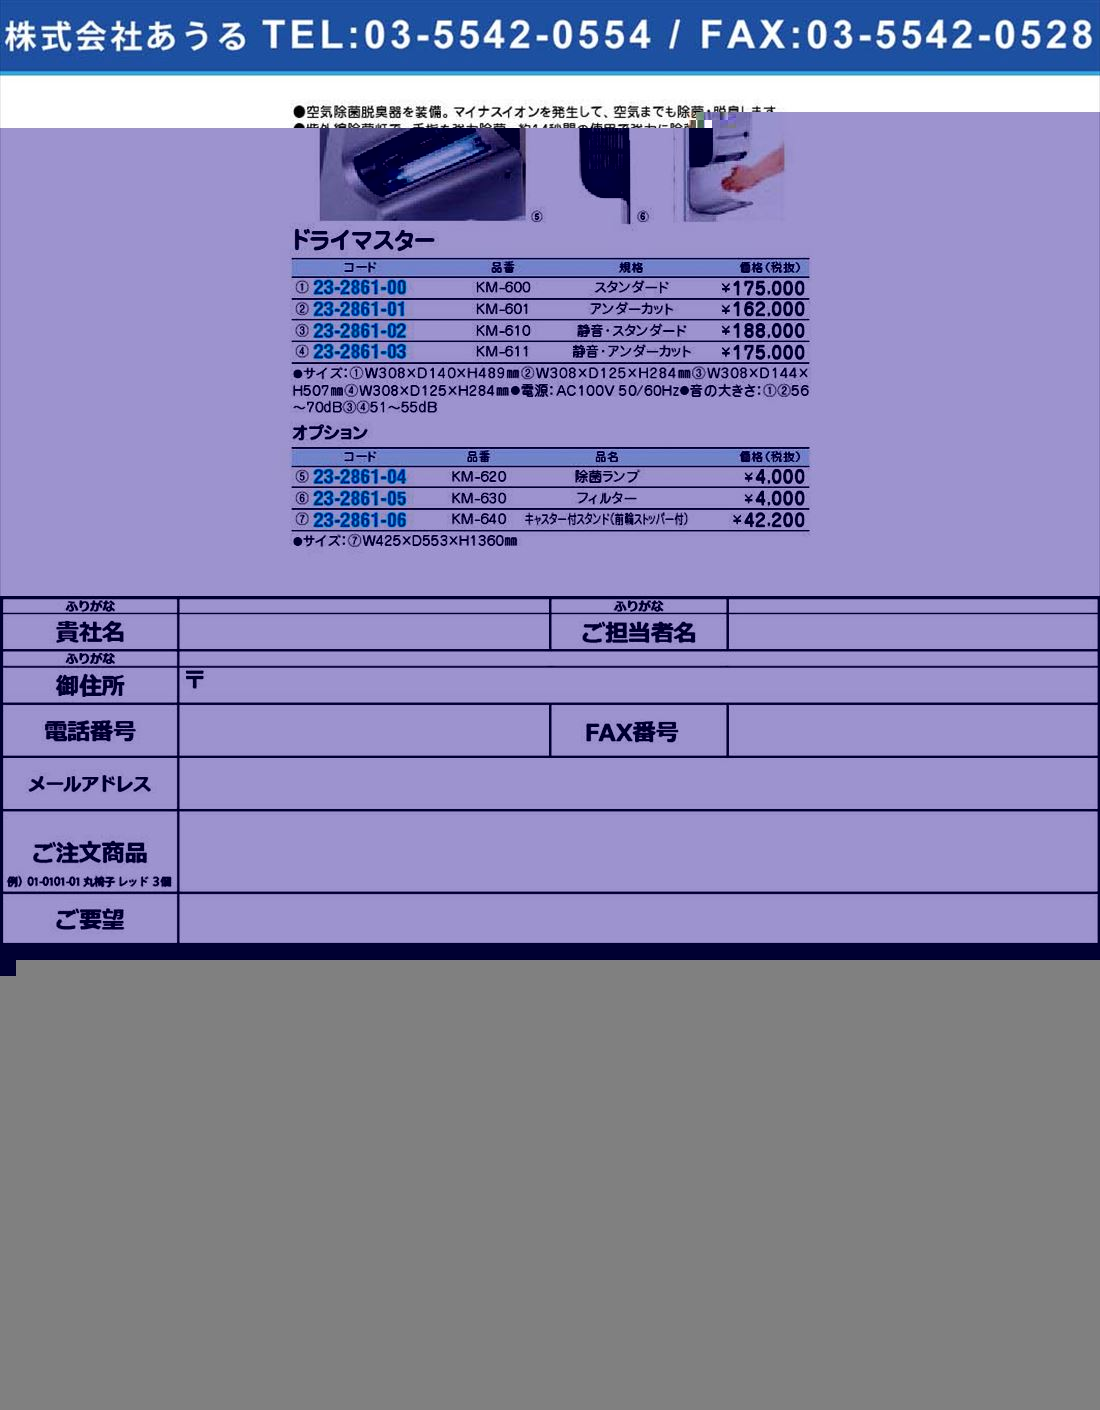 (23-2861-04)ドライマスター オプションKM-620(23-2861-04)【1個単位】【2009年カタログ商品】